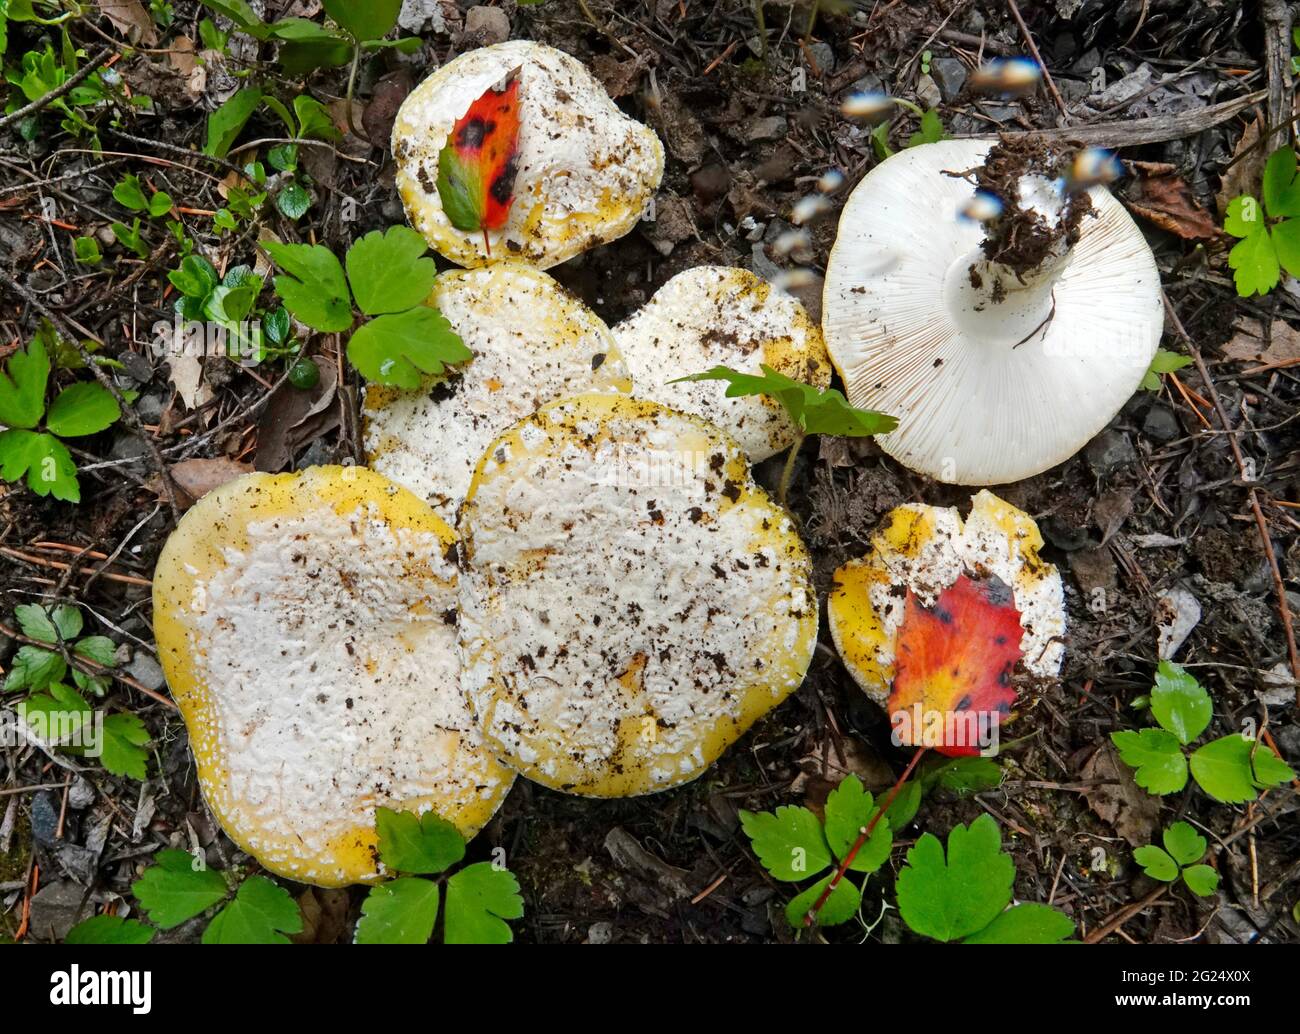 Amanita aprica, también conocida como la amanita del sol, es un hongo venenoso que crece en el noroeste del Pacífico, usualmente en bosques de pinos/abetos de Douglas. Foto de stock